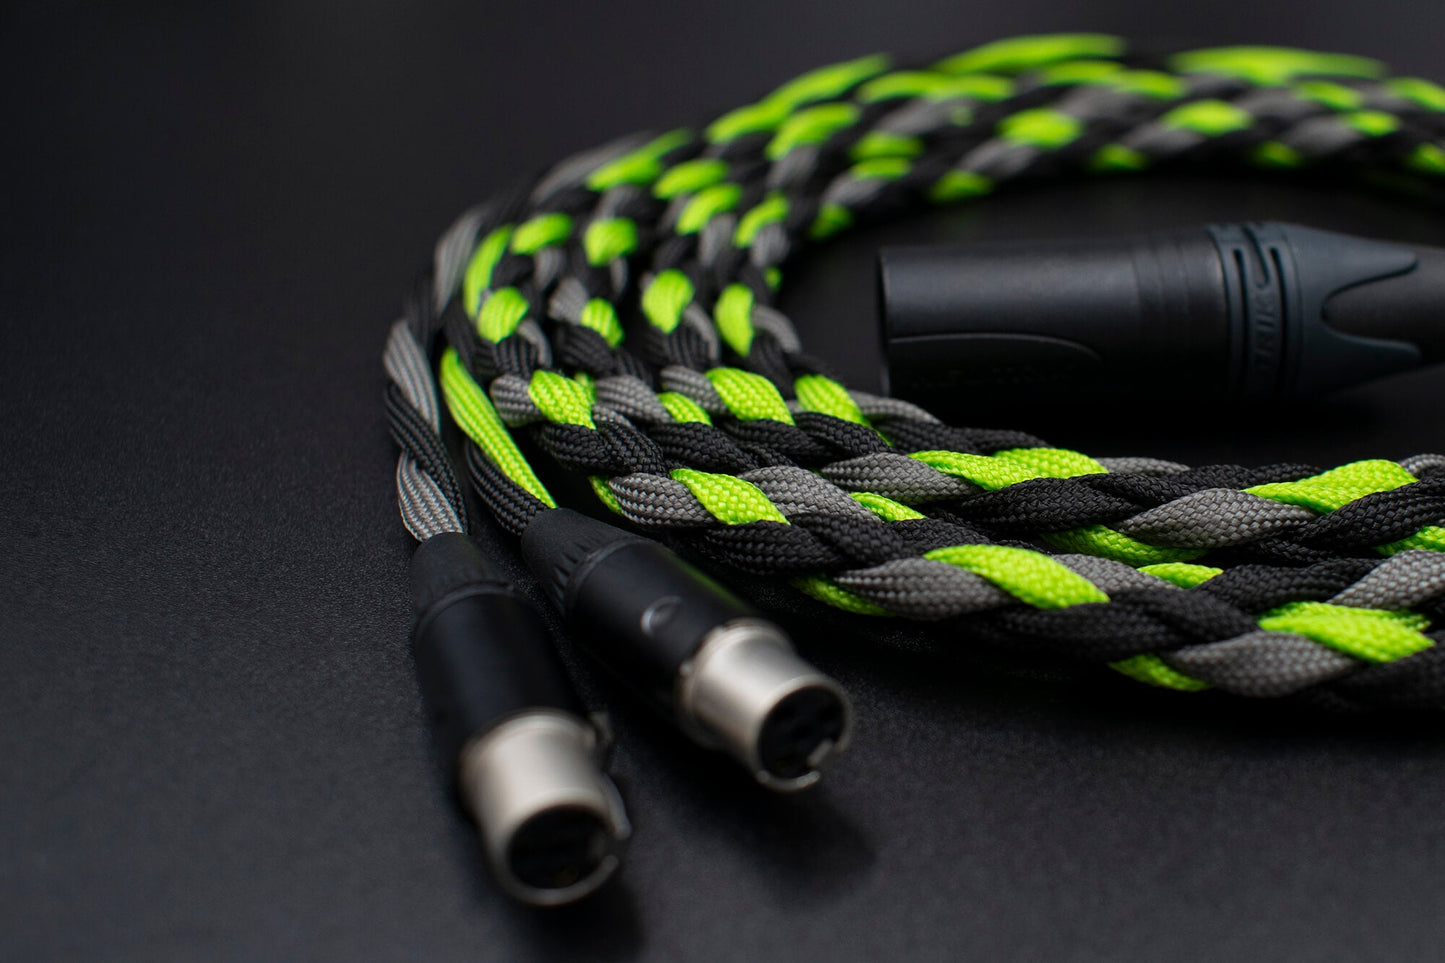 Custom braided Audeze cable - Arachne Audio